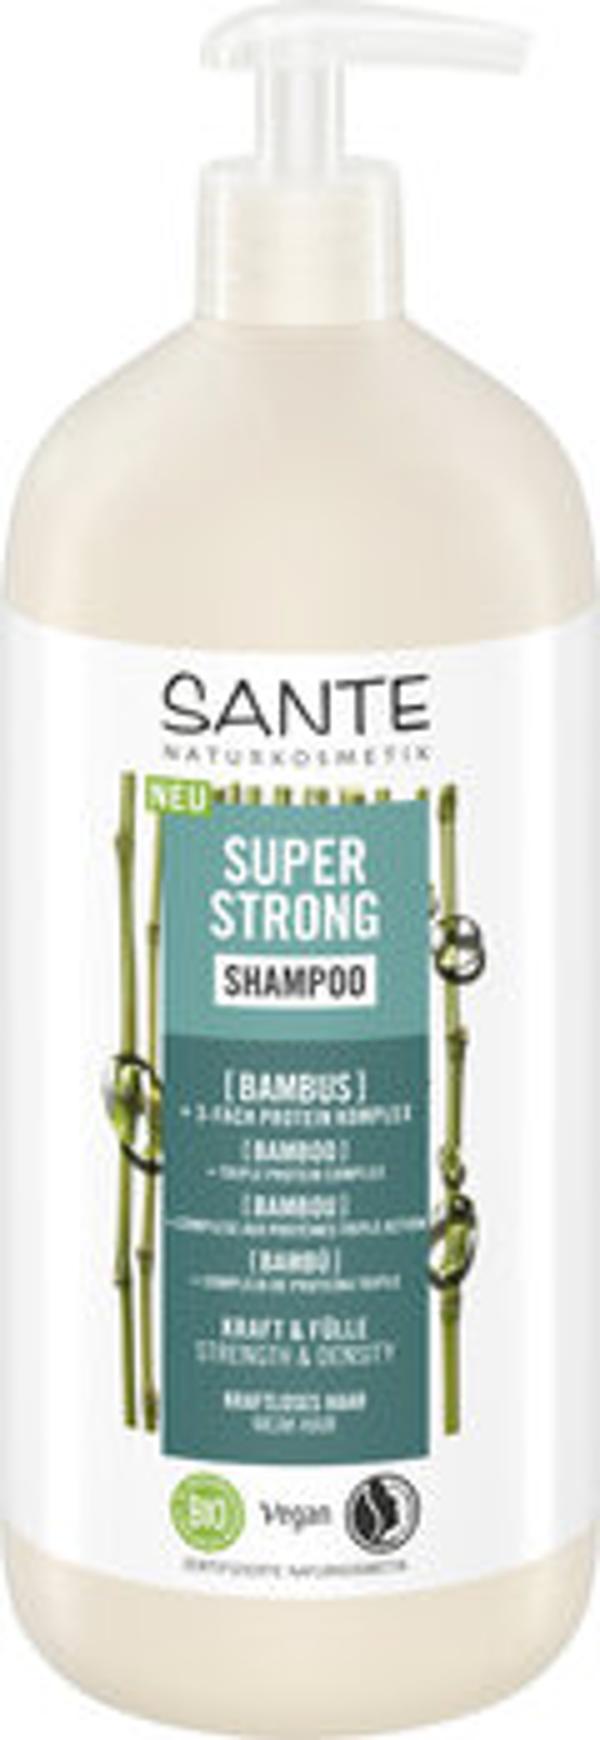 Produktfoto zu Super Strong Shampoo Bambus 950ml